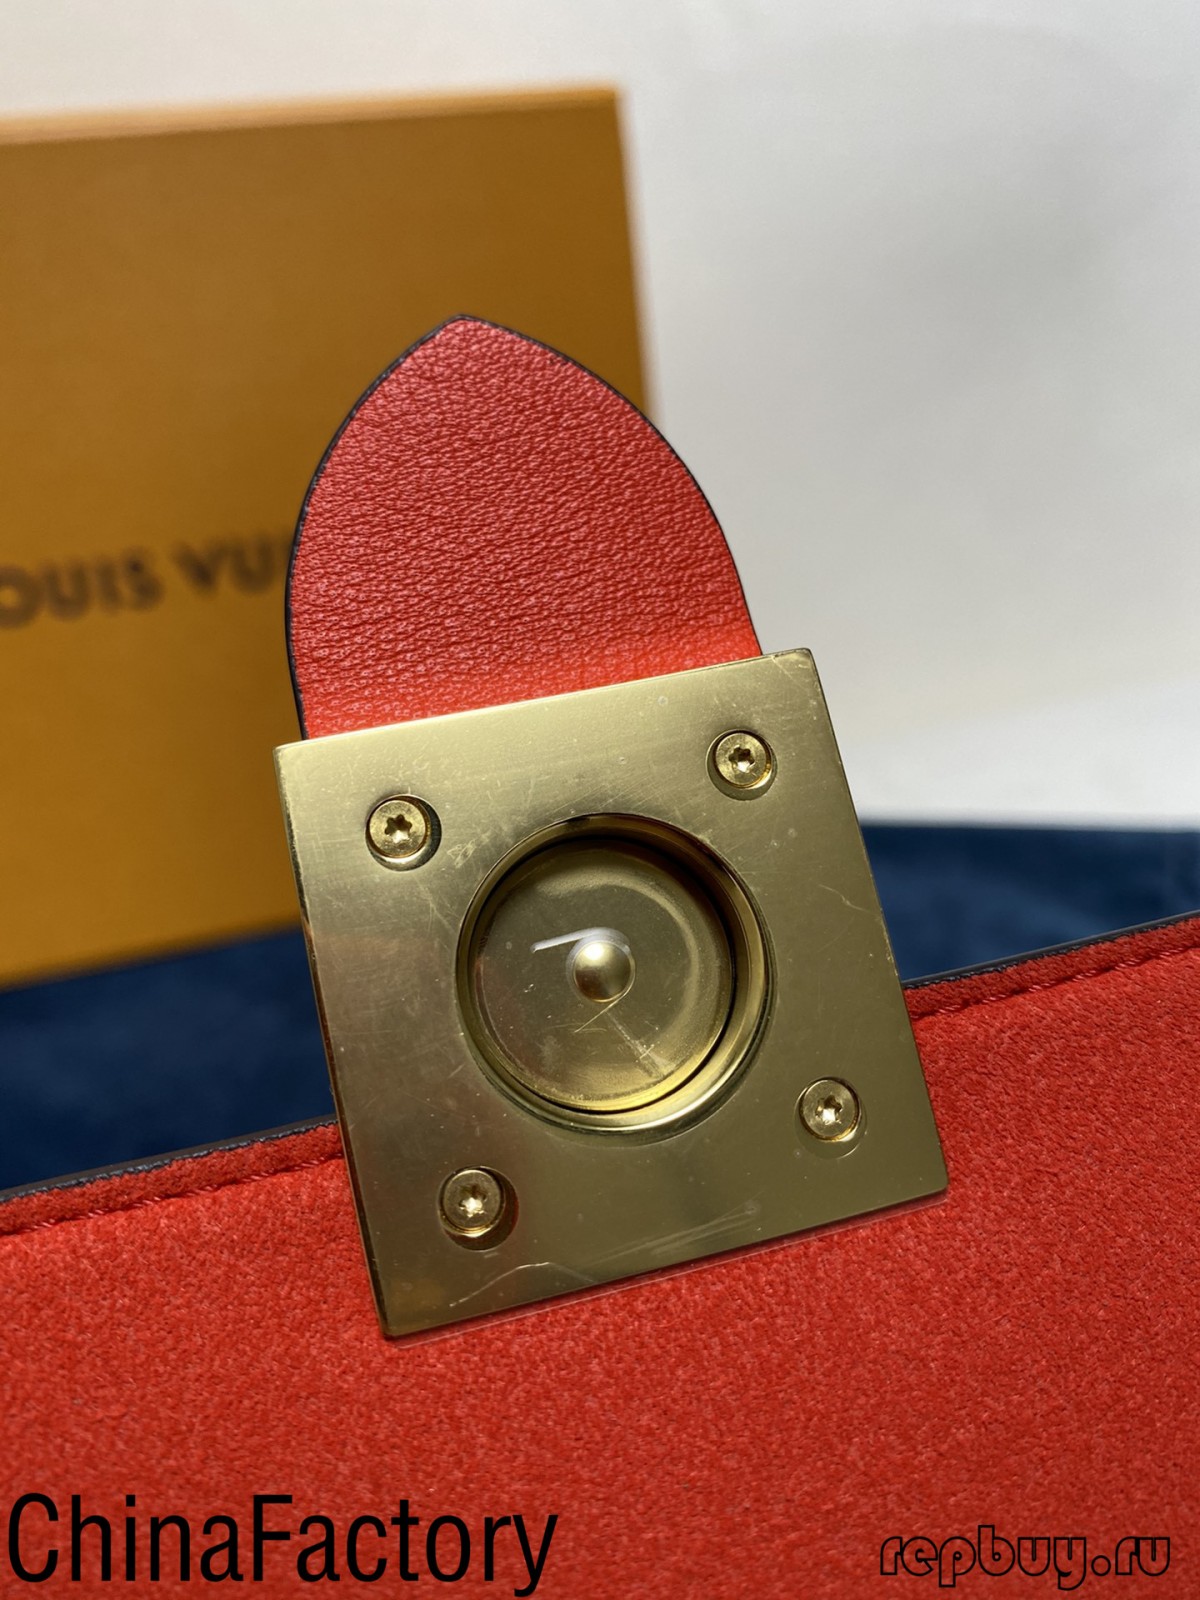 ບາງການທົບທວນຄືນຖົງ replica aaa ທີ່ຈະແບ່ງປັນ (2022 ສະບັບໃຫມ່) - ຄຸນະພາບທີ່ດີທີ່ສຸດ Fake Louis Vuitton Bag Online Store, Replica designer bag ru